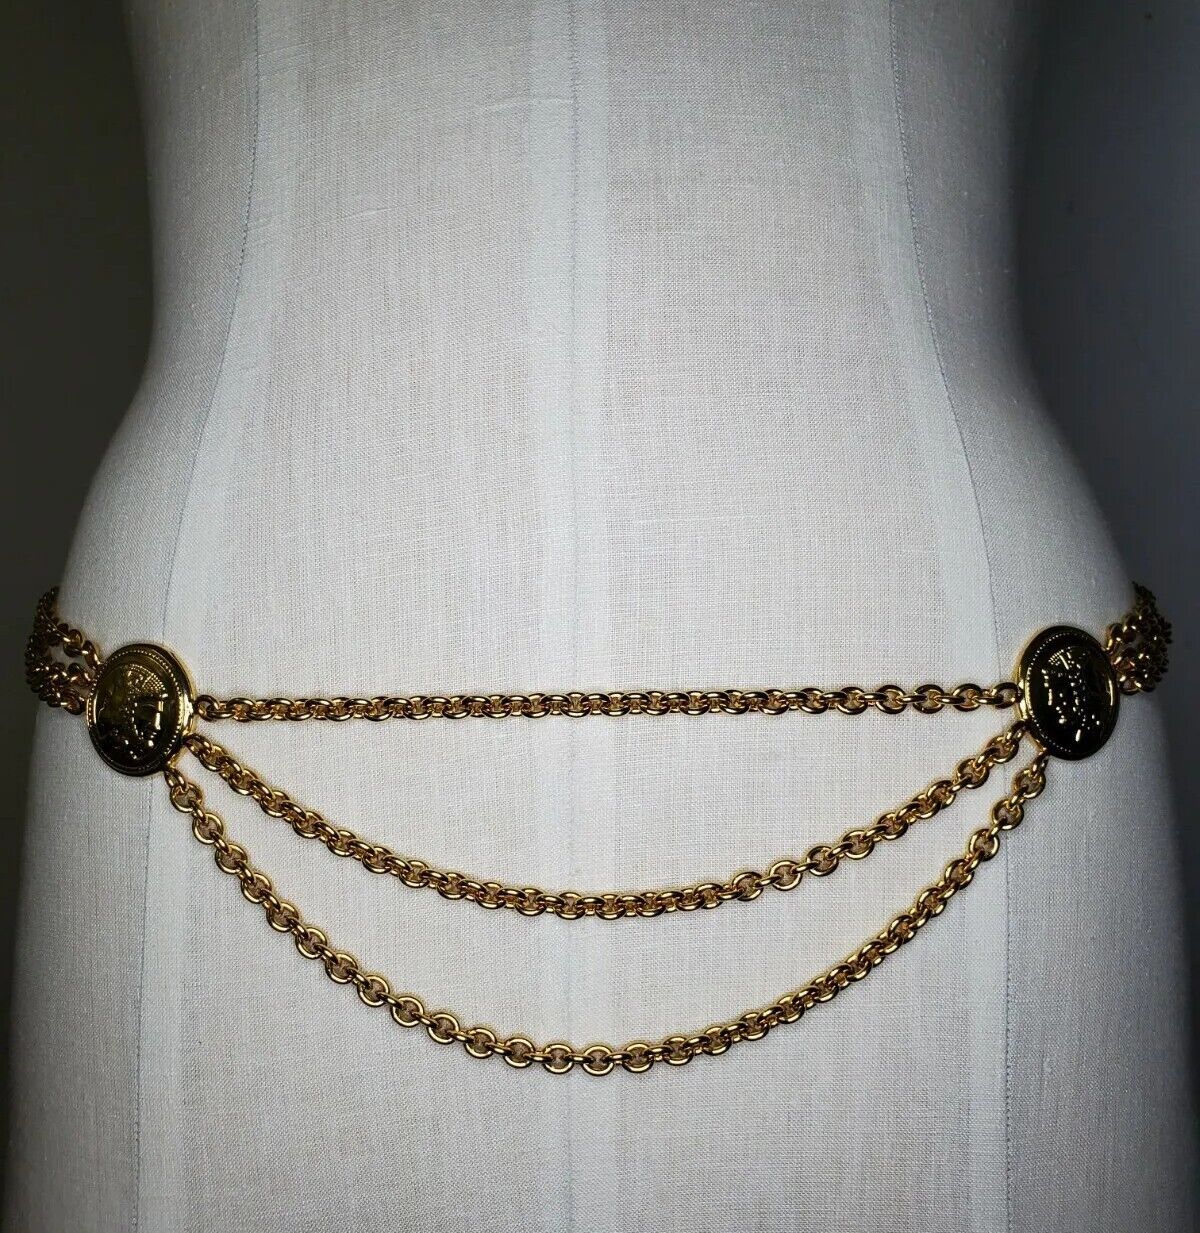 Vintage Fendi Janus Medallion Chain Belt in Gold (36 inch Length 